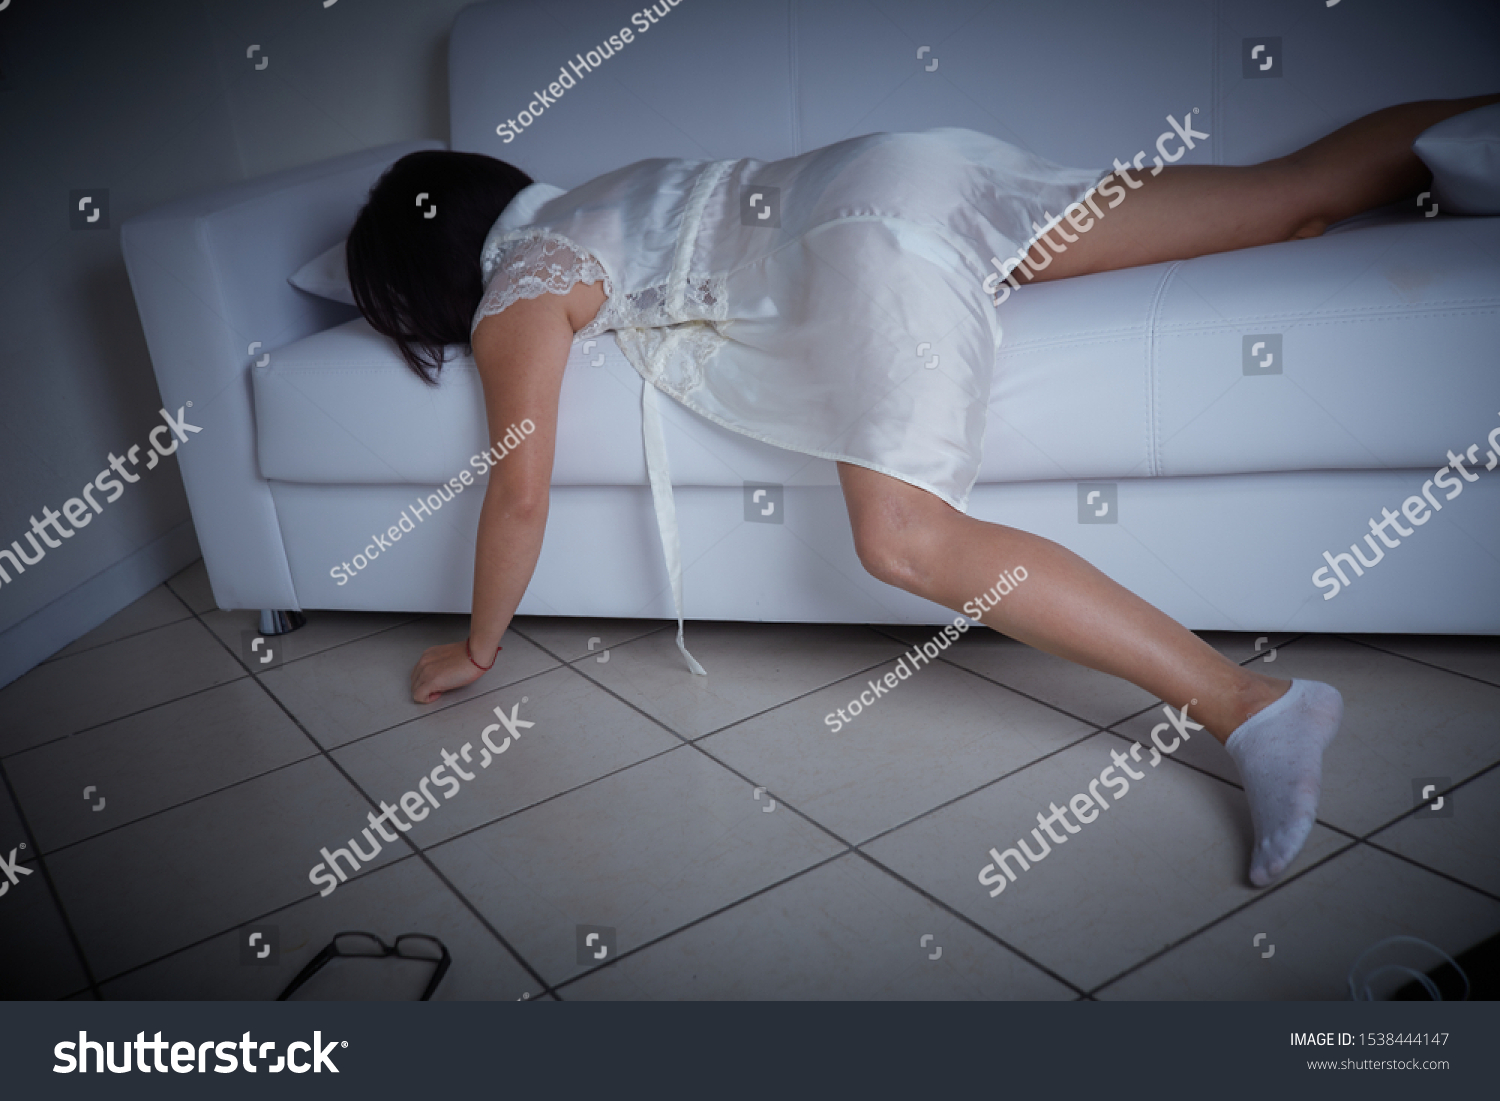 Порочная женщина валяется на диване